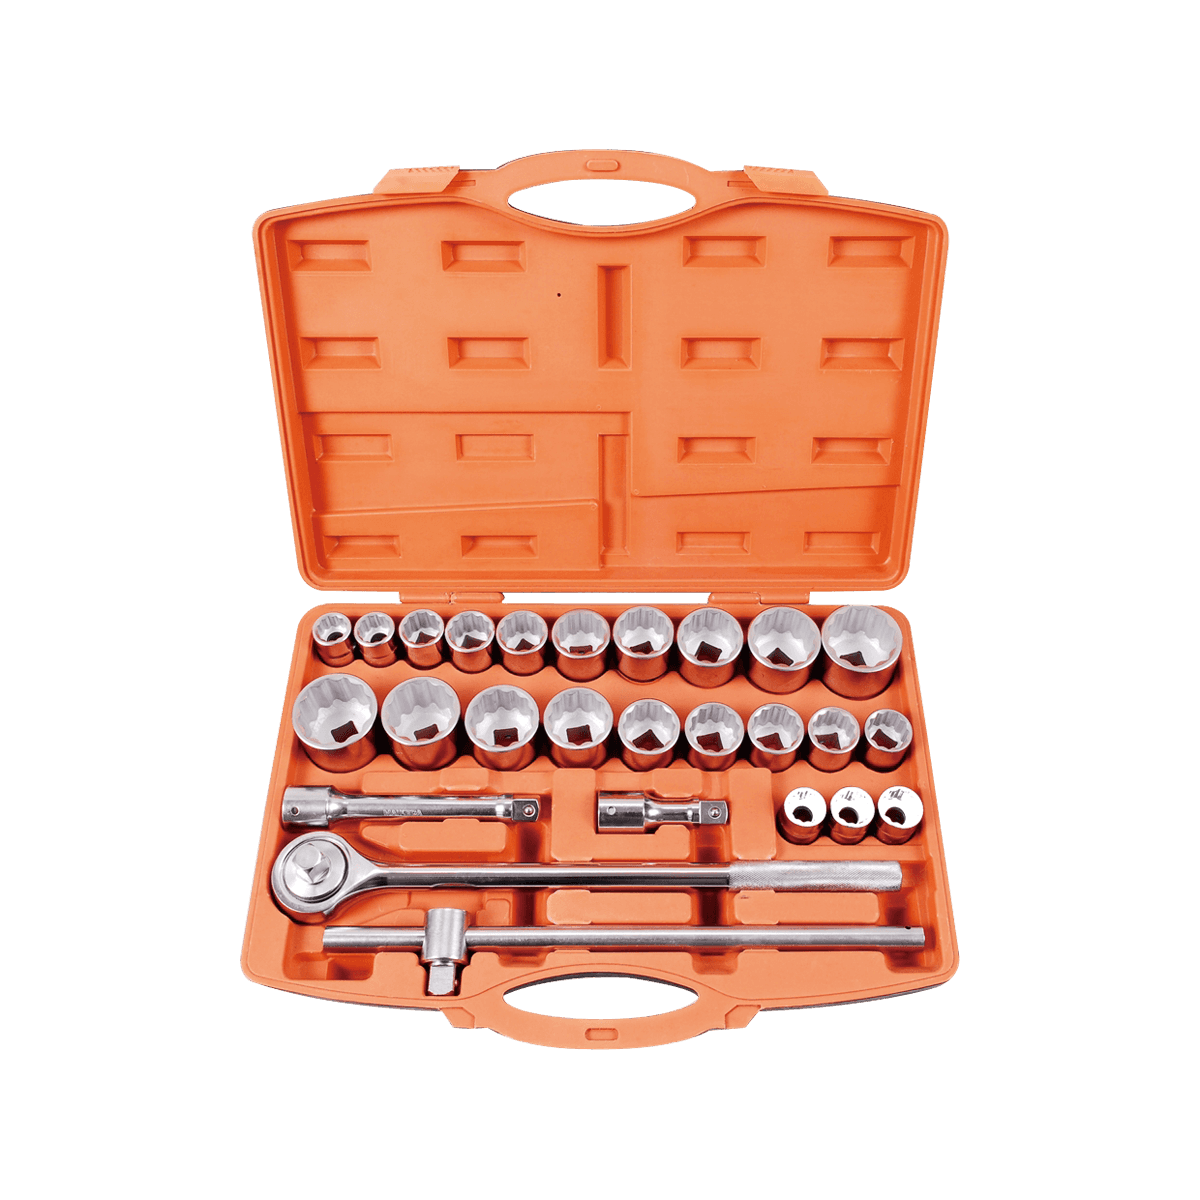 27 Stuks Gereedschap Herramientas ferramentas kit 3/4 Inch Drive Zware Impact Dopsleutel Set Voor Auto Reparatie Tools